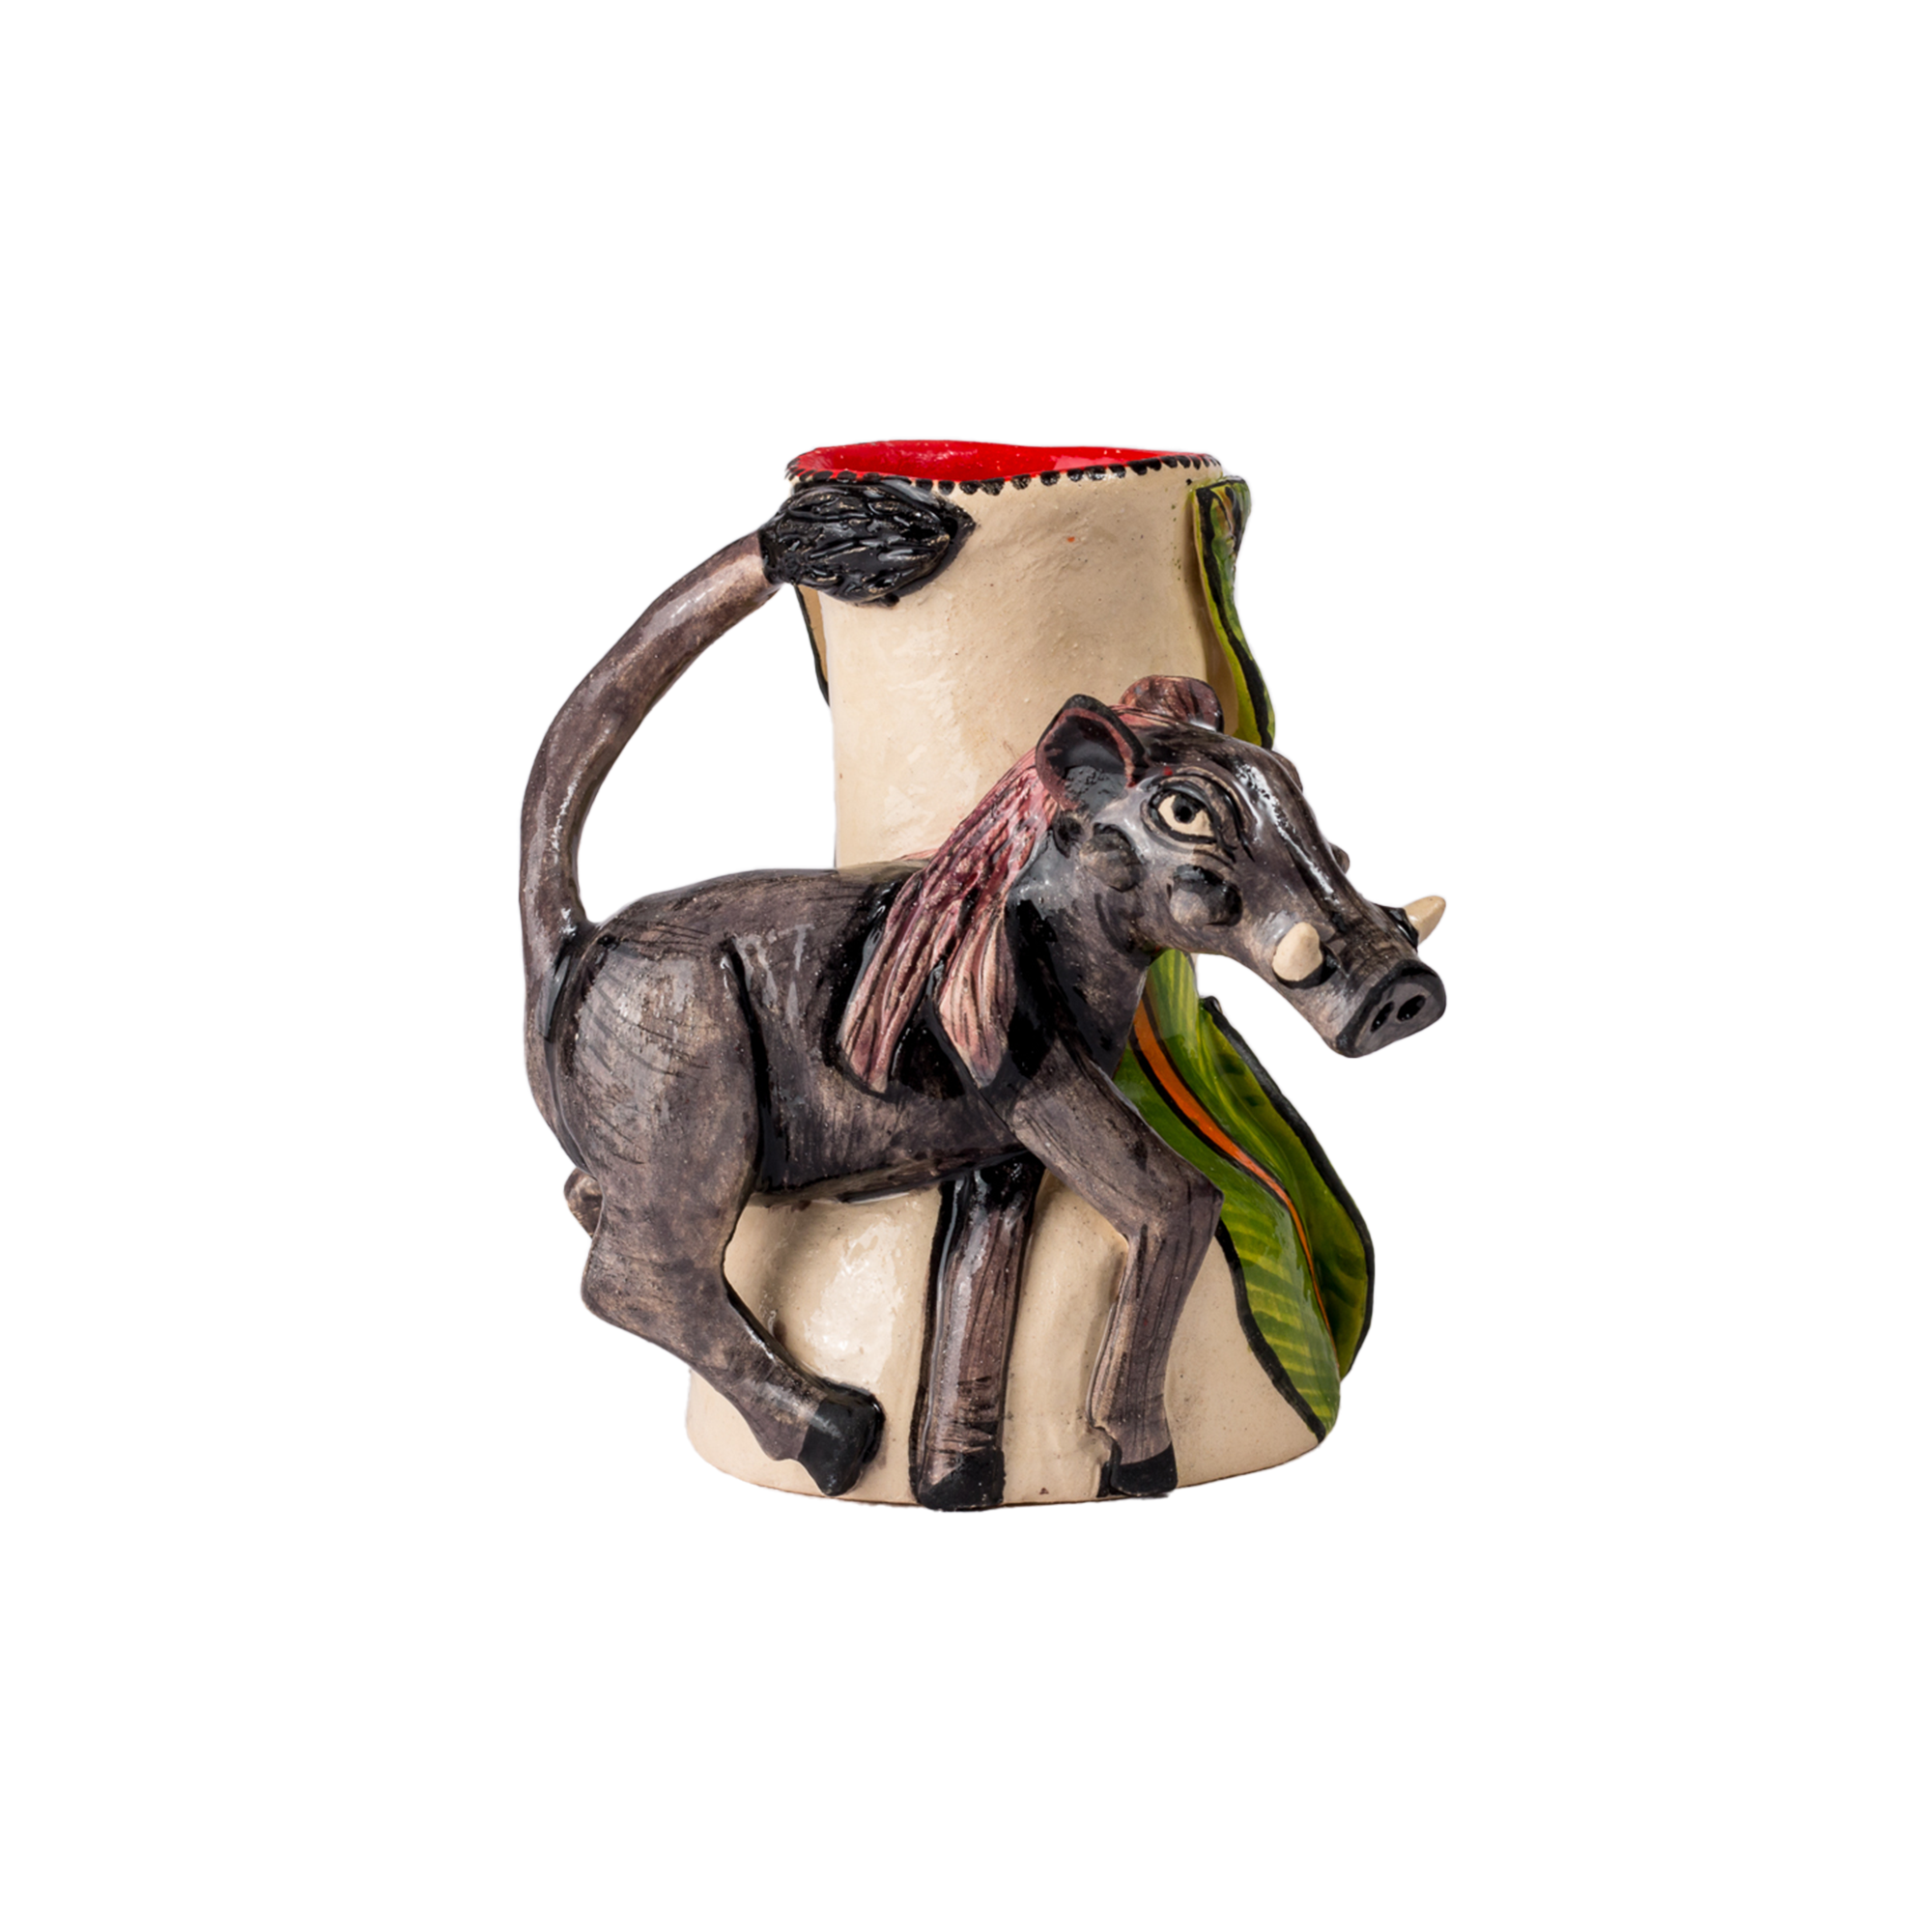 3D Ceramic Warthog Candle Holder